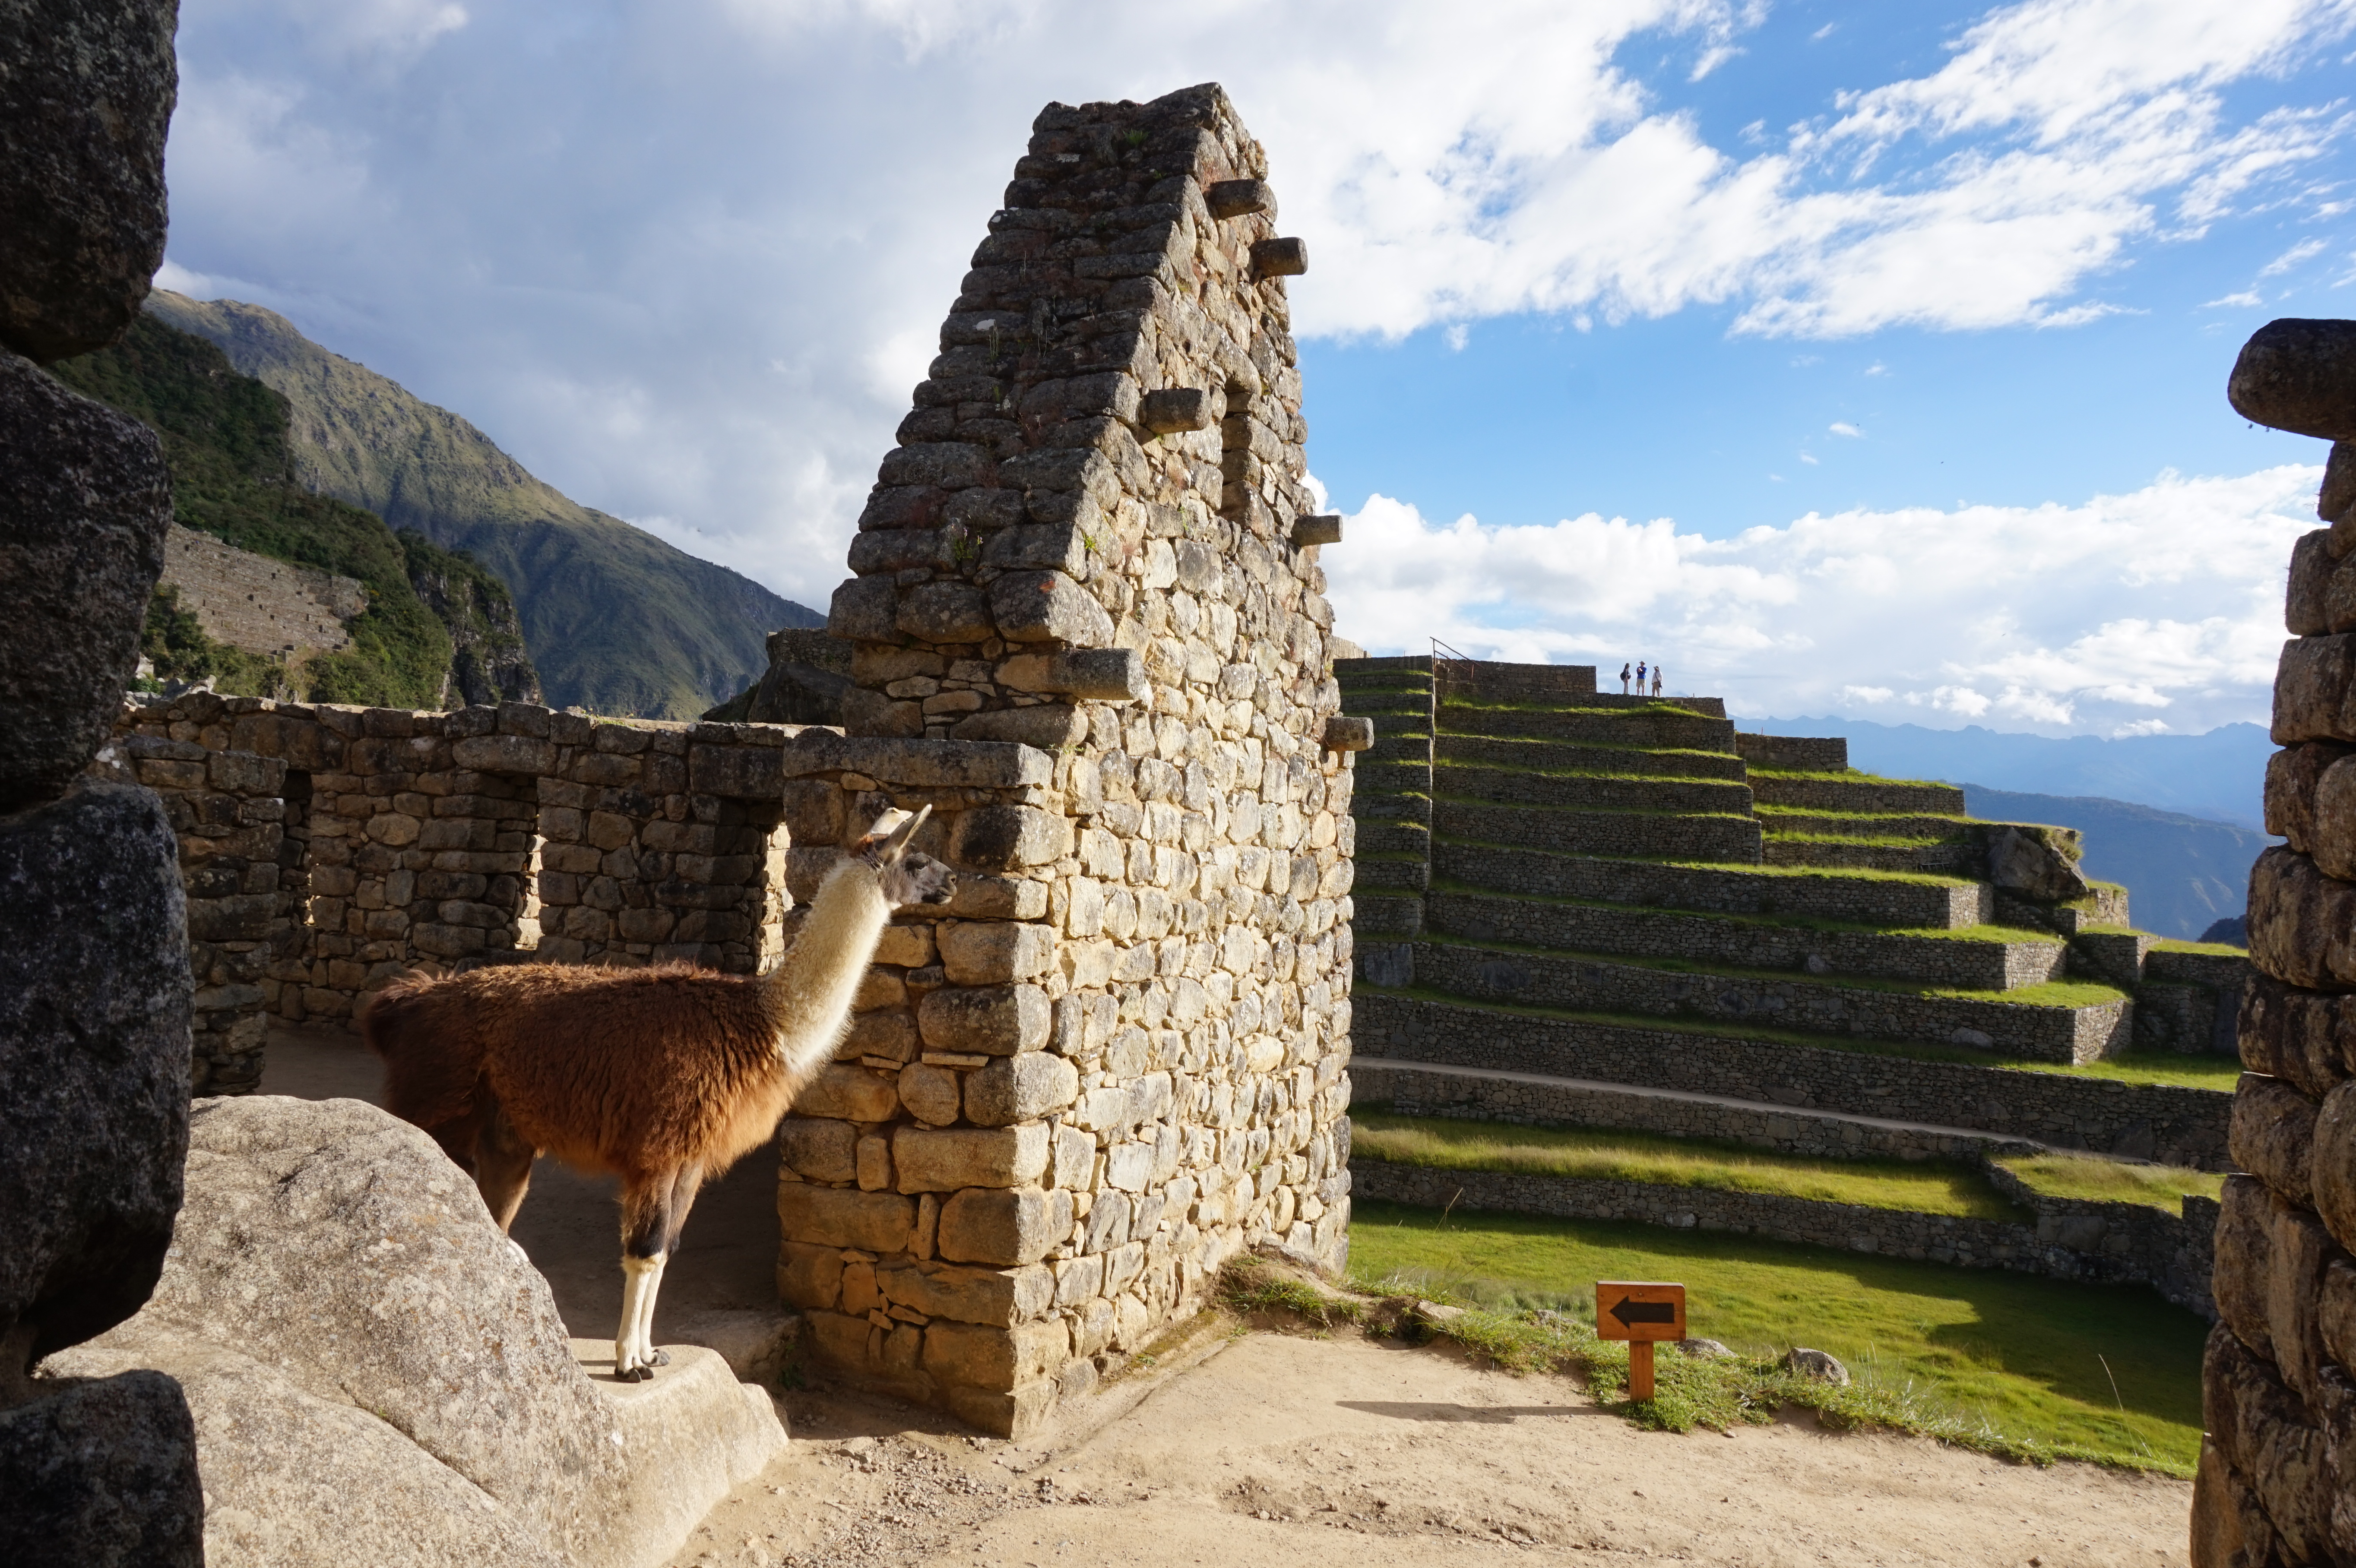 Lama @ Machu Picchu